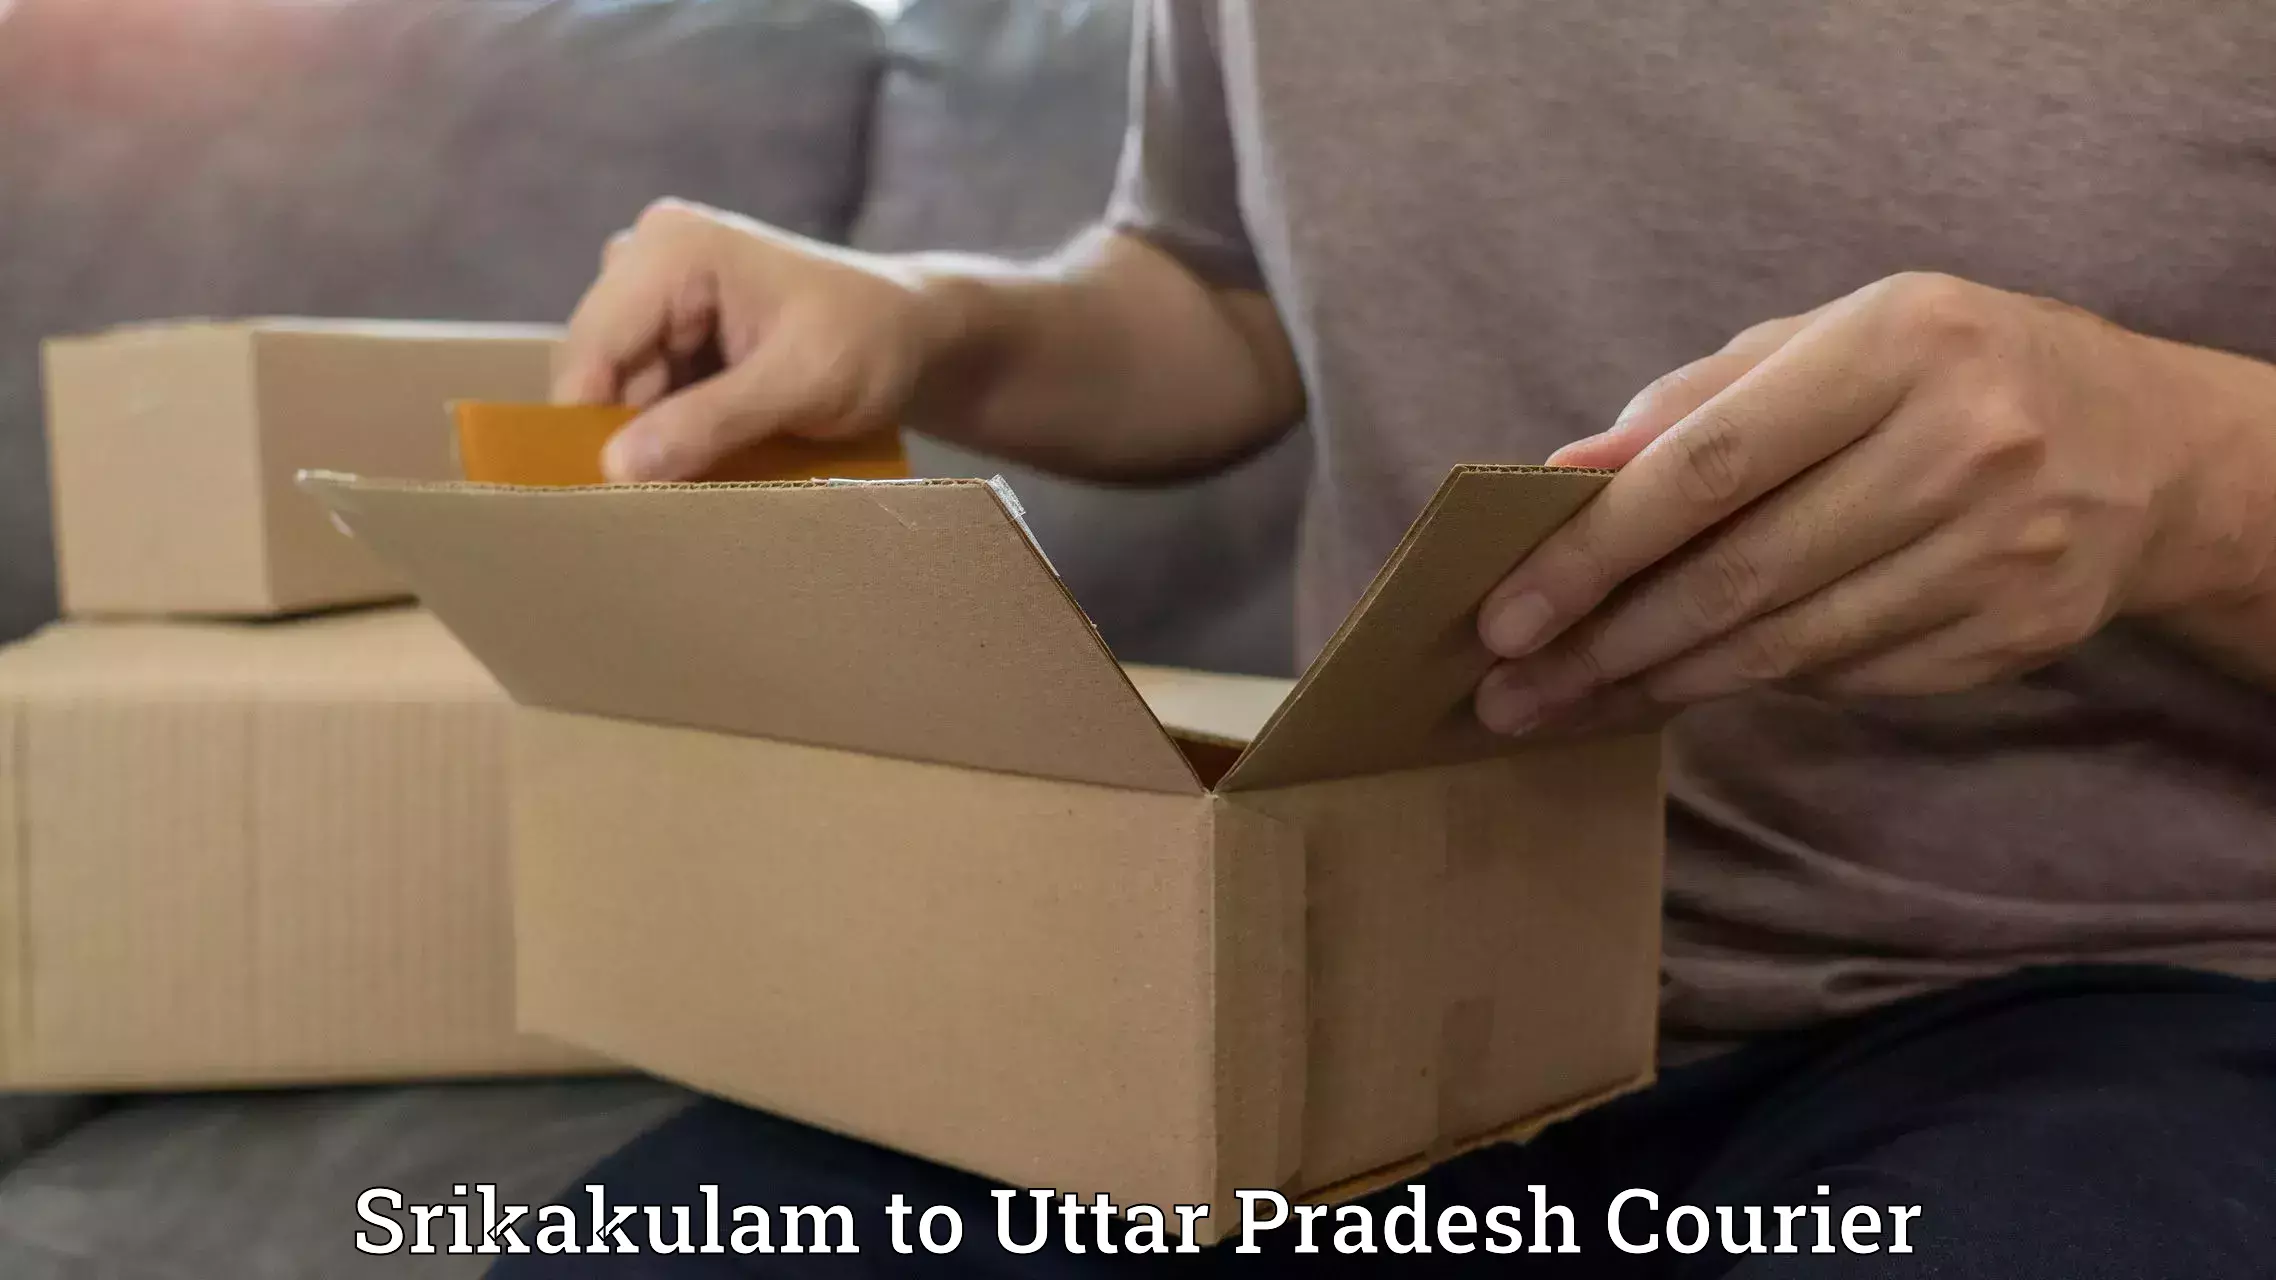 Premium courier services Srikakulam to Ambuj Nagar